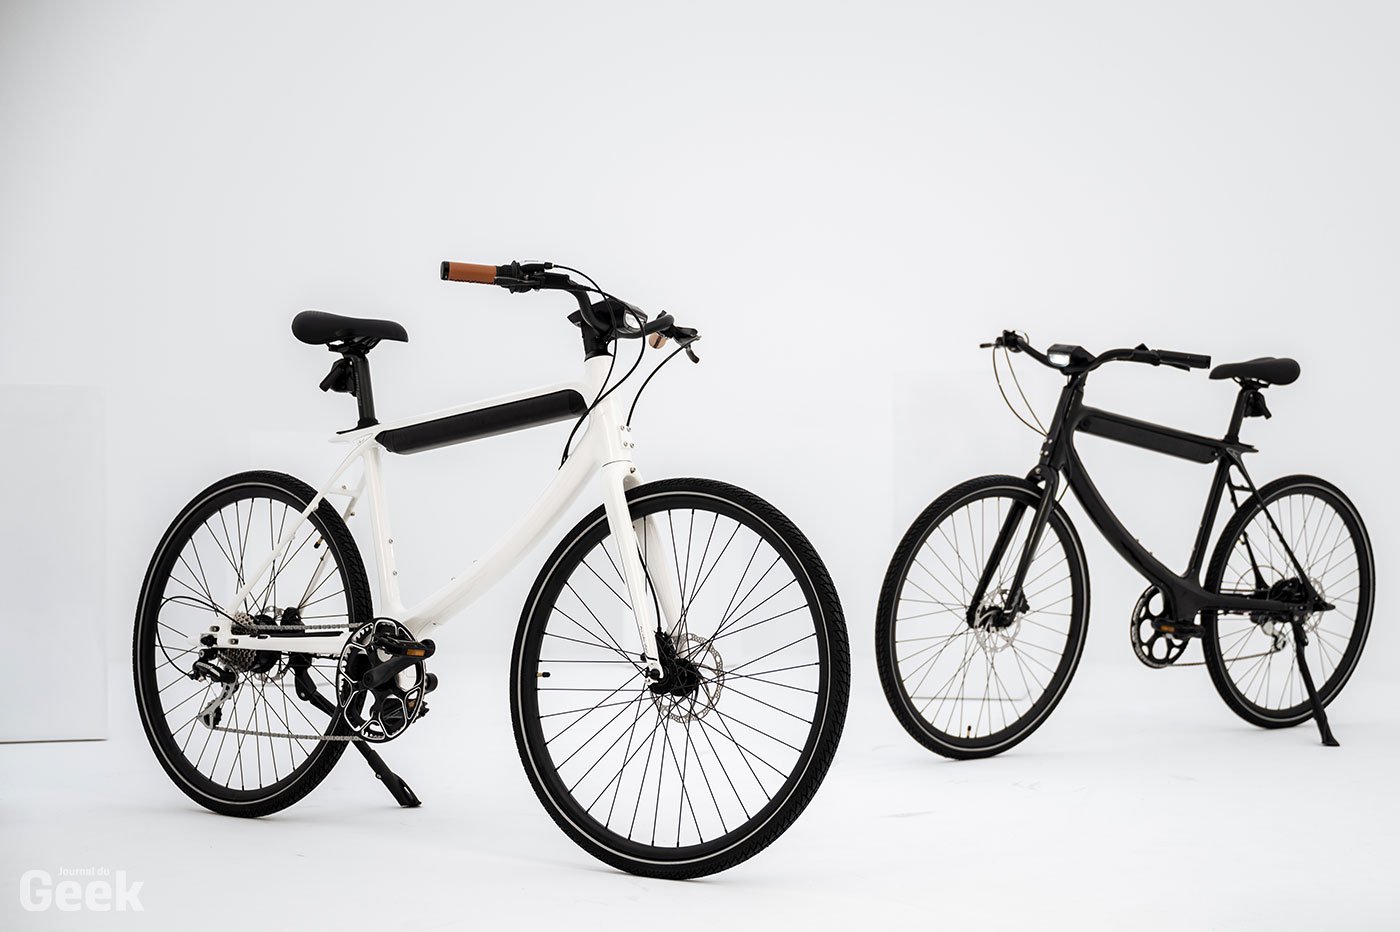 Urtopia Chord : un nouveau vélo électrique qui va faire sensation thumbnail